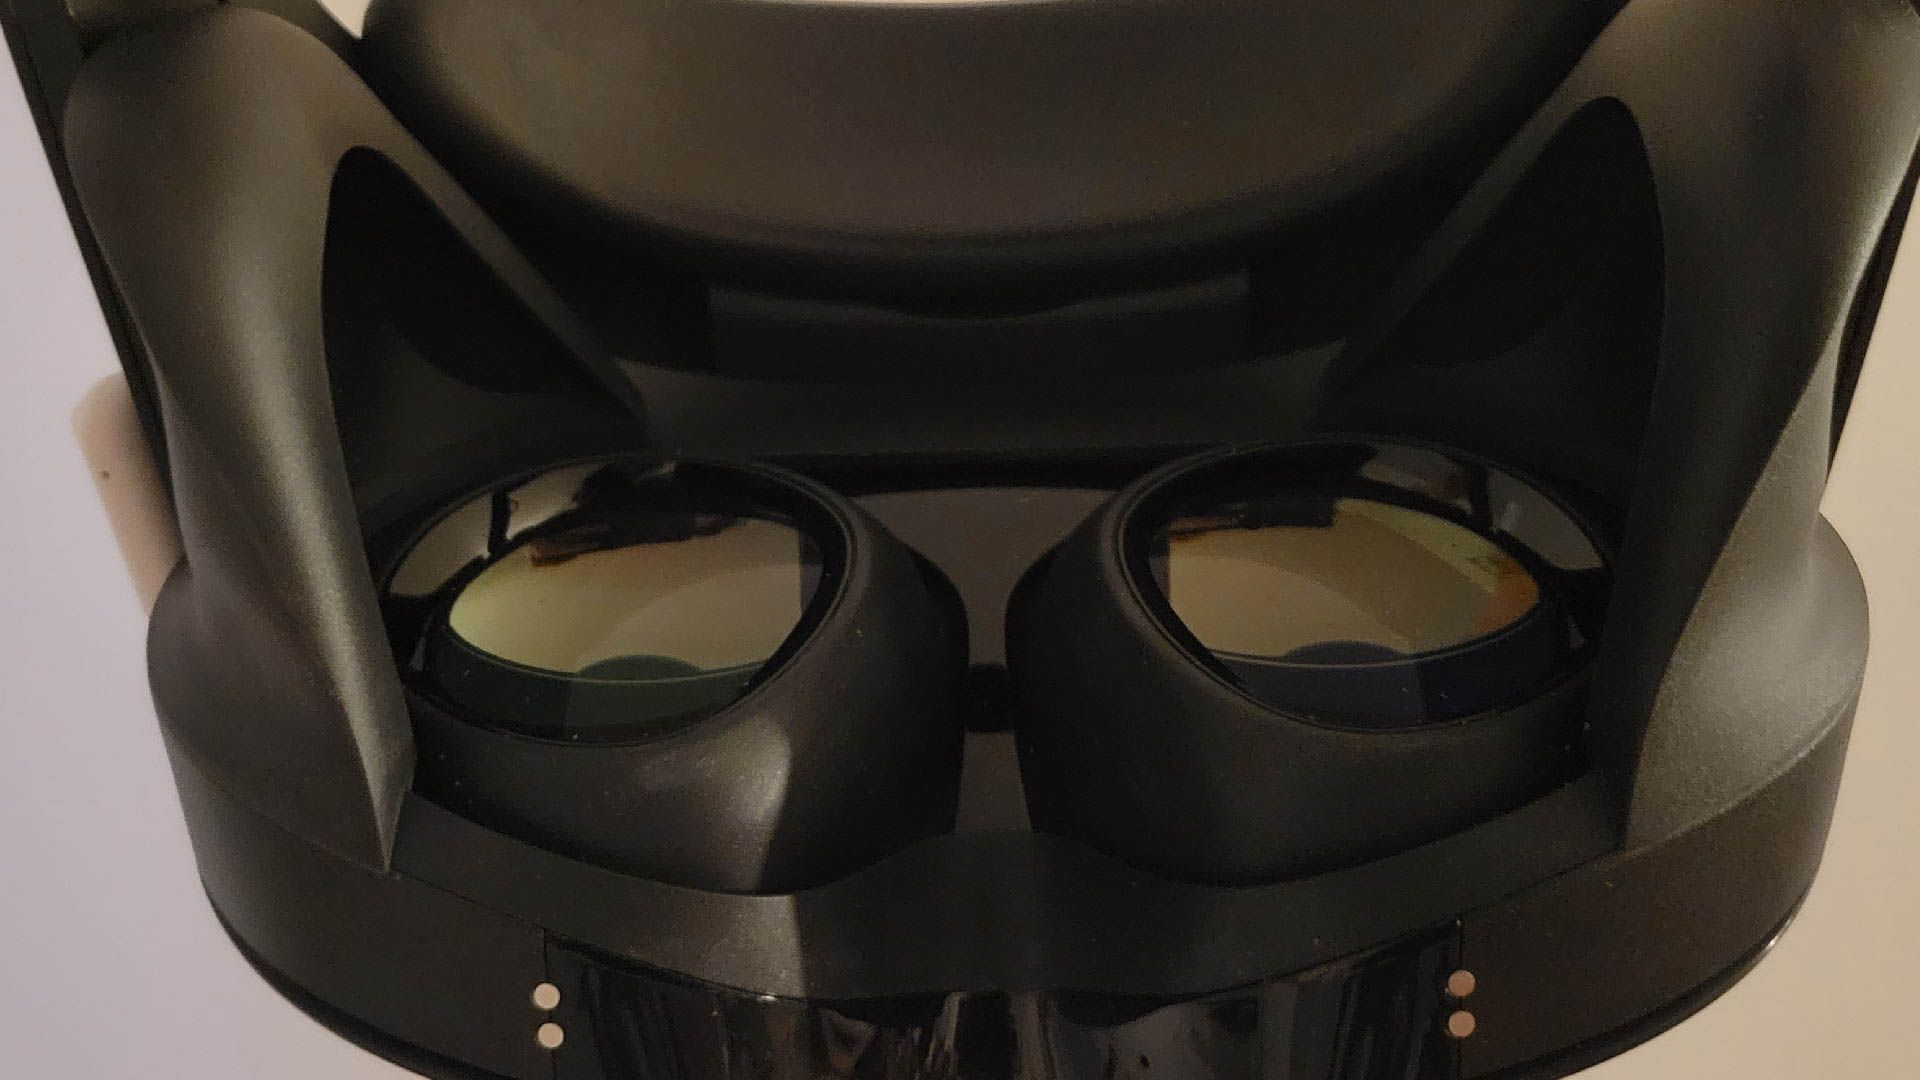 The Quest Pro's Pancake Lenses